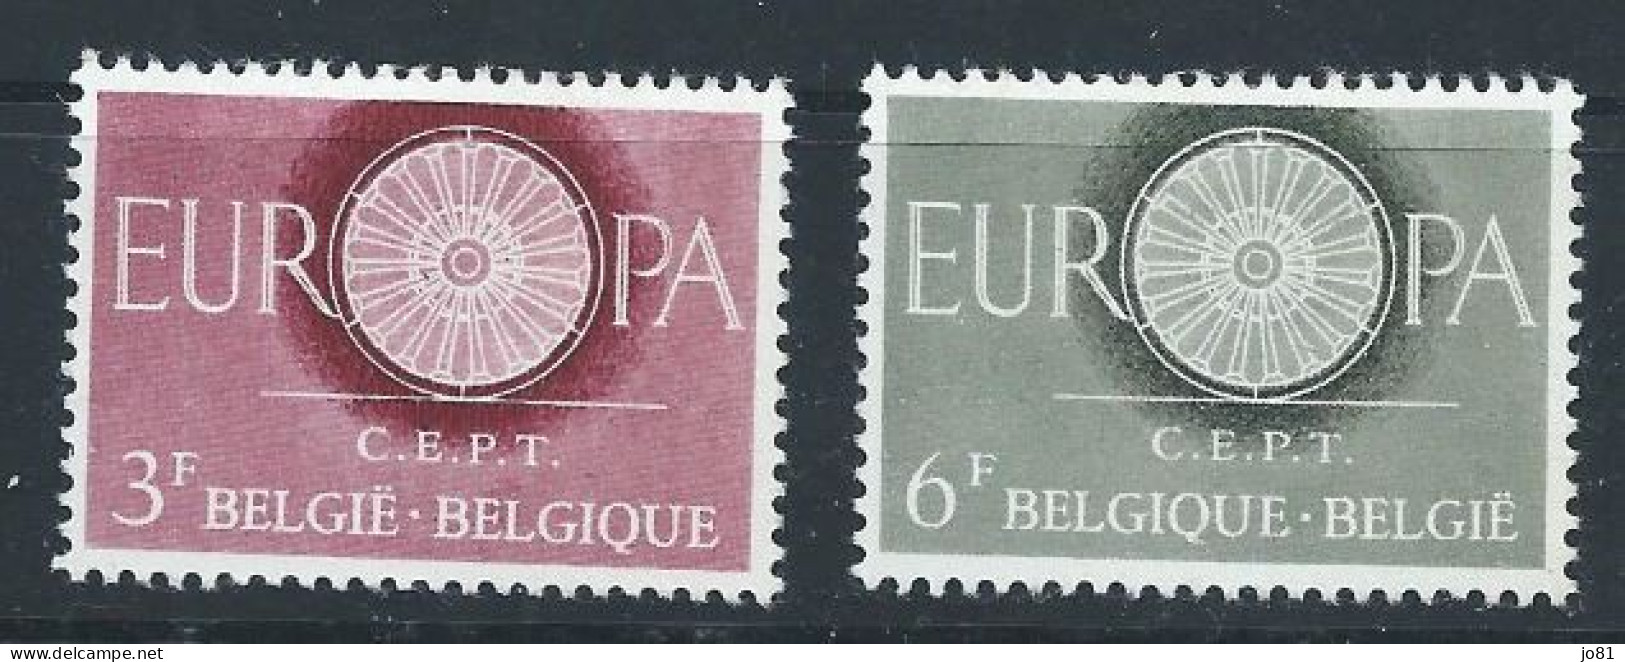 Belgique YT 1150-1151 Neuf Sans Charnière - XX - MNH Europa 1960 - Ongebruikt